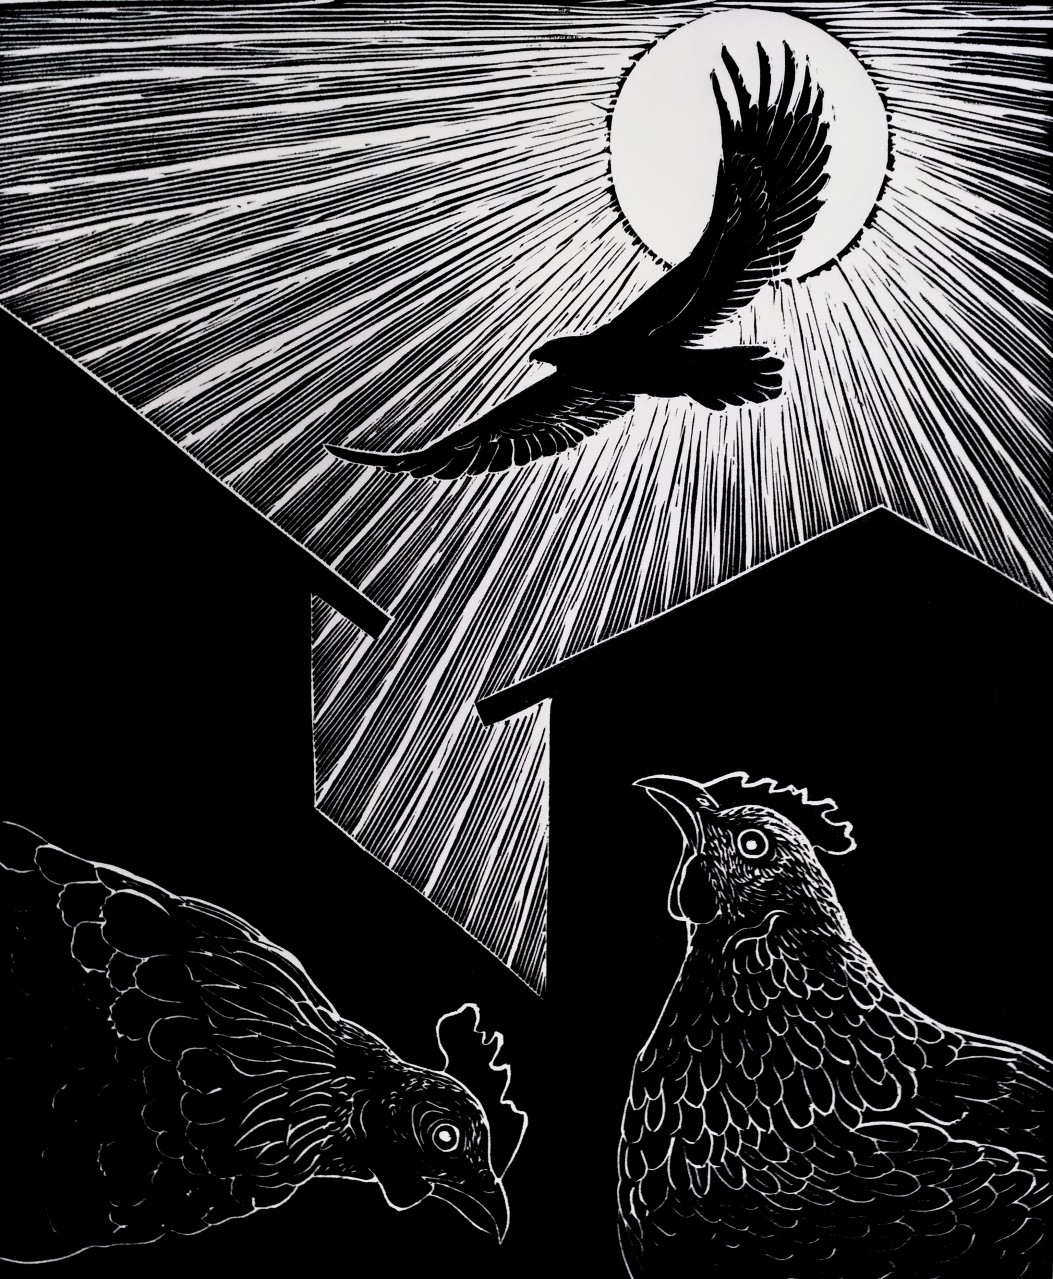 Иллюстрация к басне И. А. Крылова "Орёл и куры"